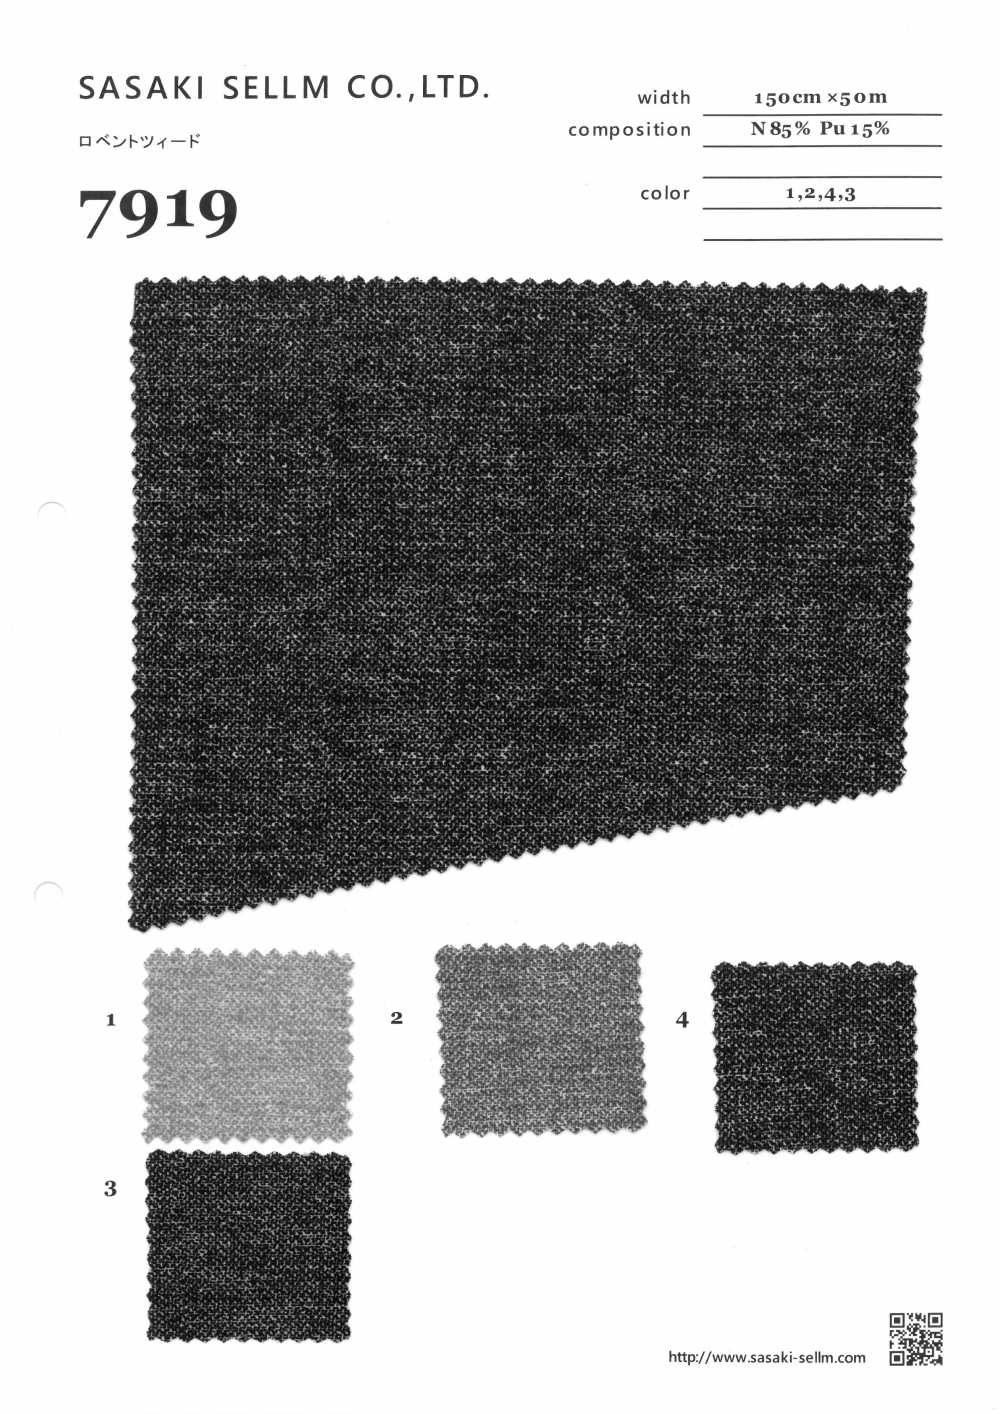 7919 Lovent Tweed[Fabrica Textil] SASAKISELLM